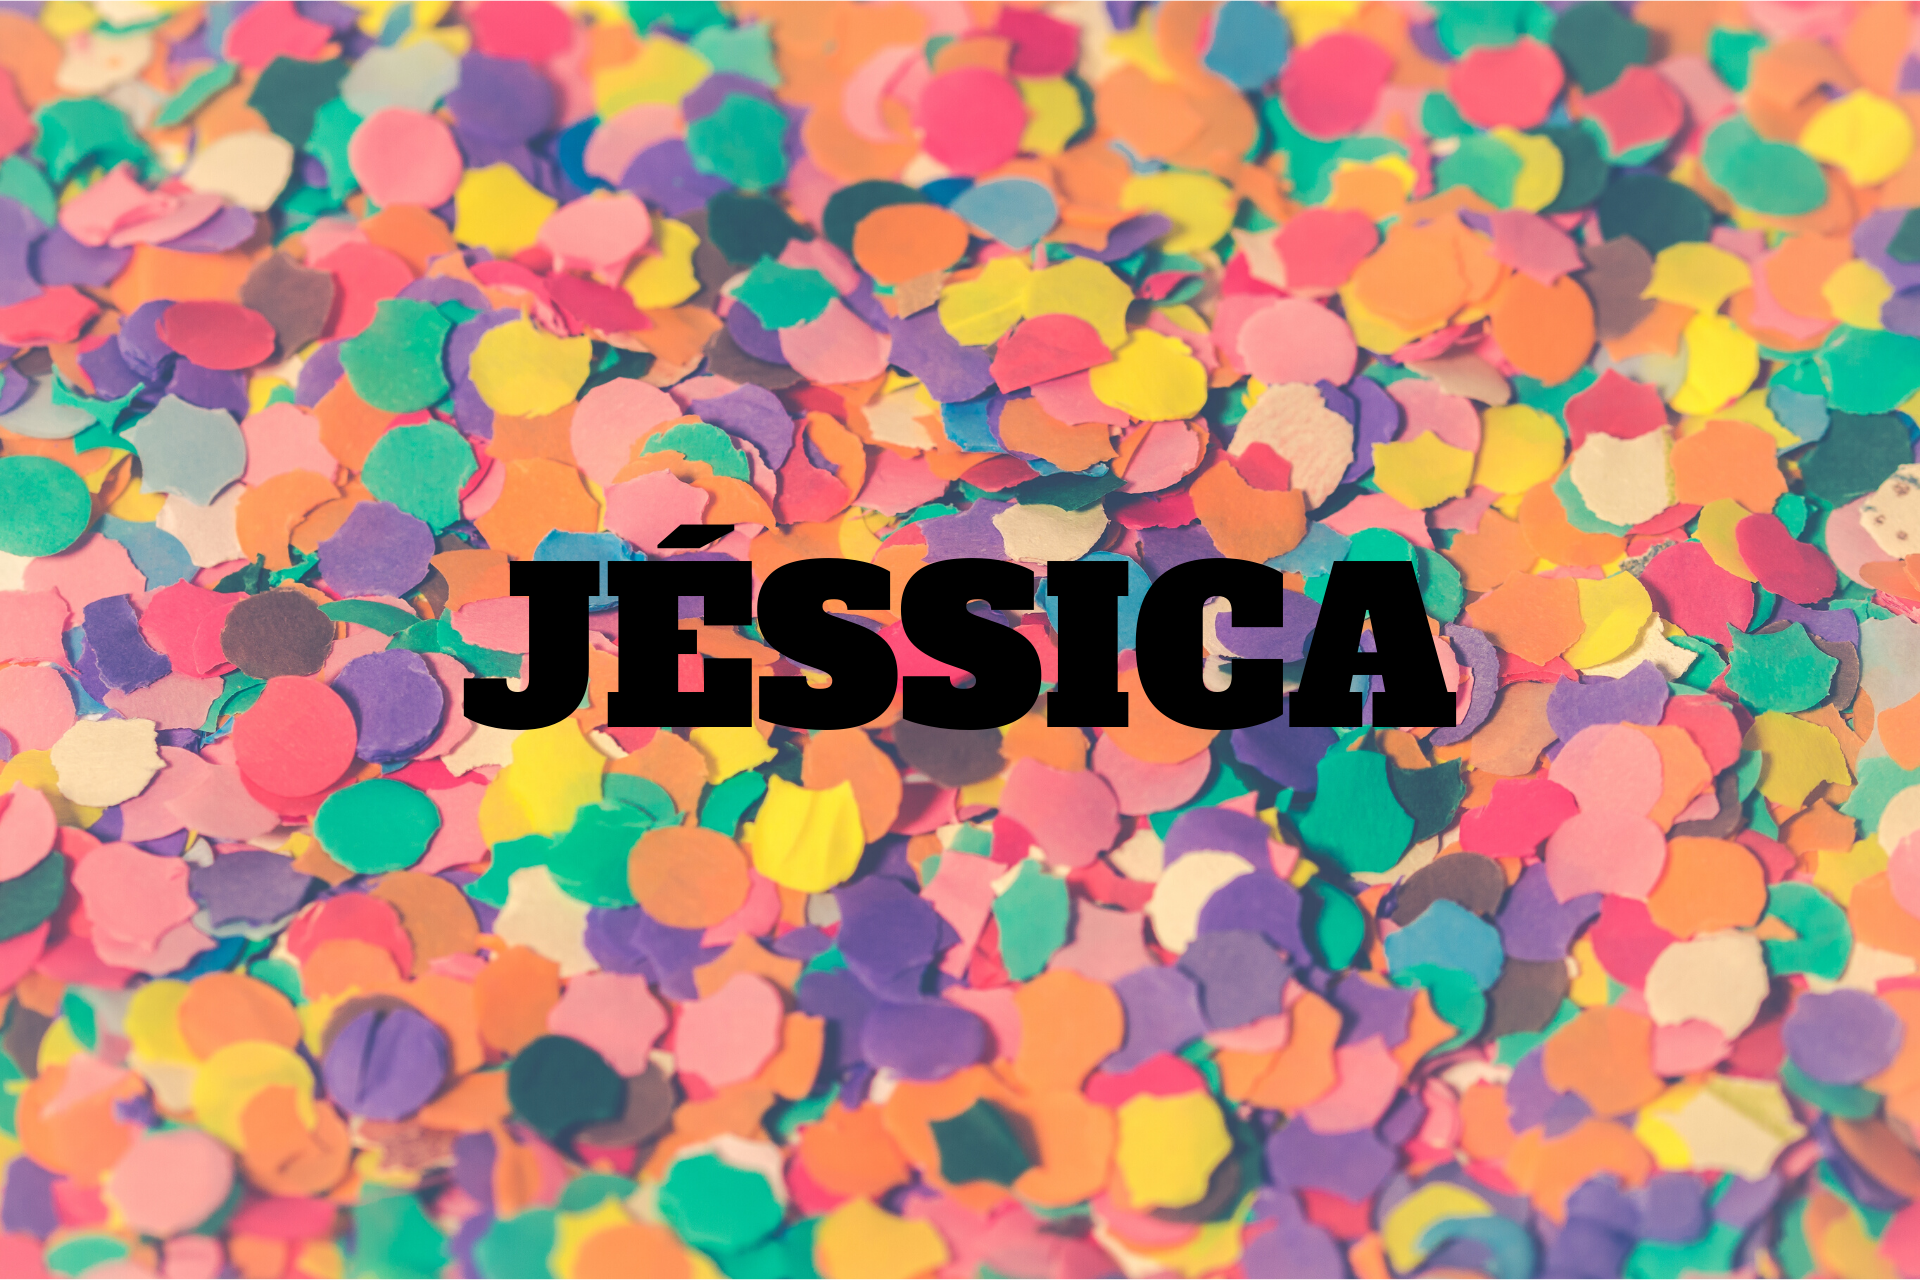  អត្ថន័យនៃ Jessica - ឈ្មោះប្រភពដើម, ប្រវត្តិសាស្រ្ត, បុគ្គលិកលក្ខណៈនិងប្រជាប្រិយភាព